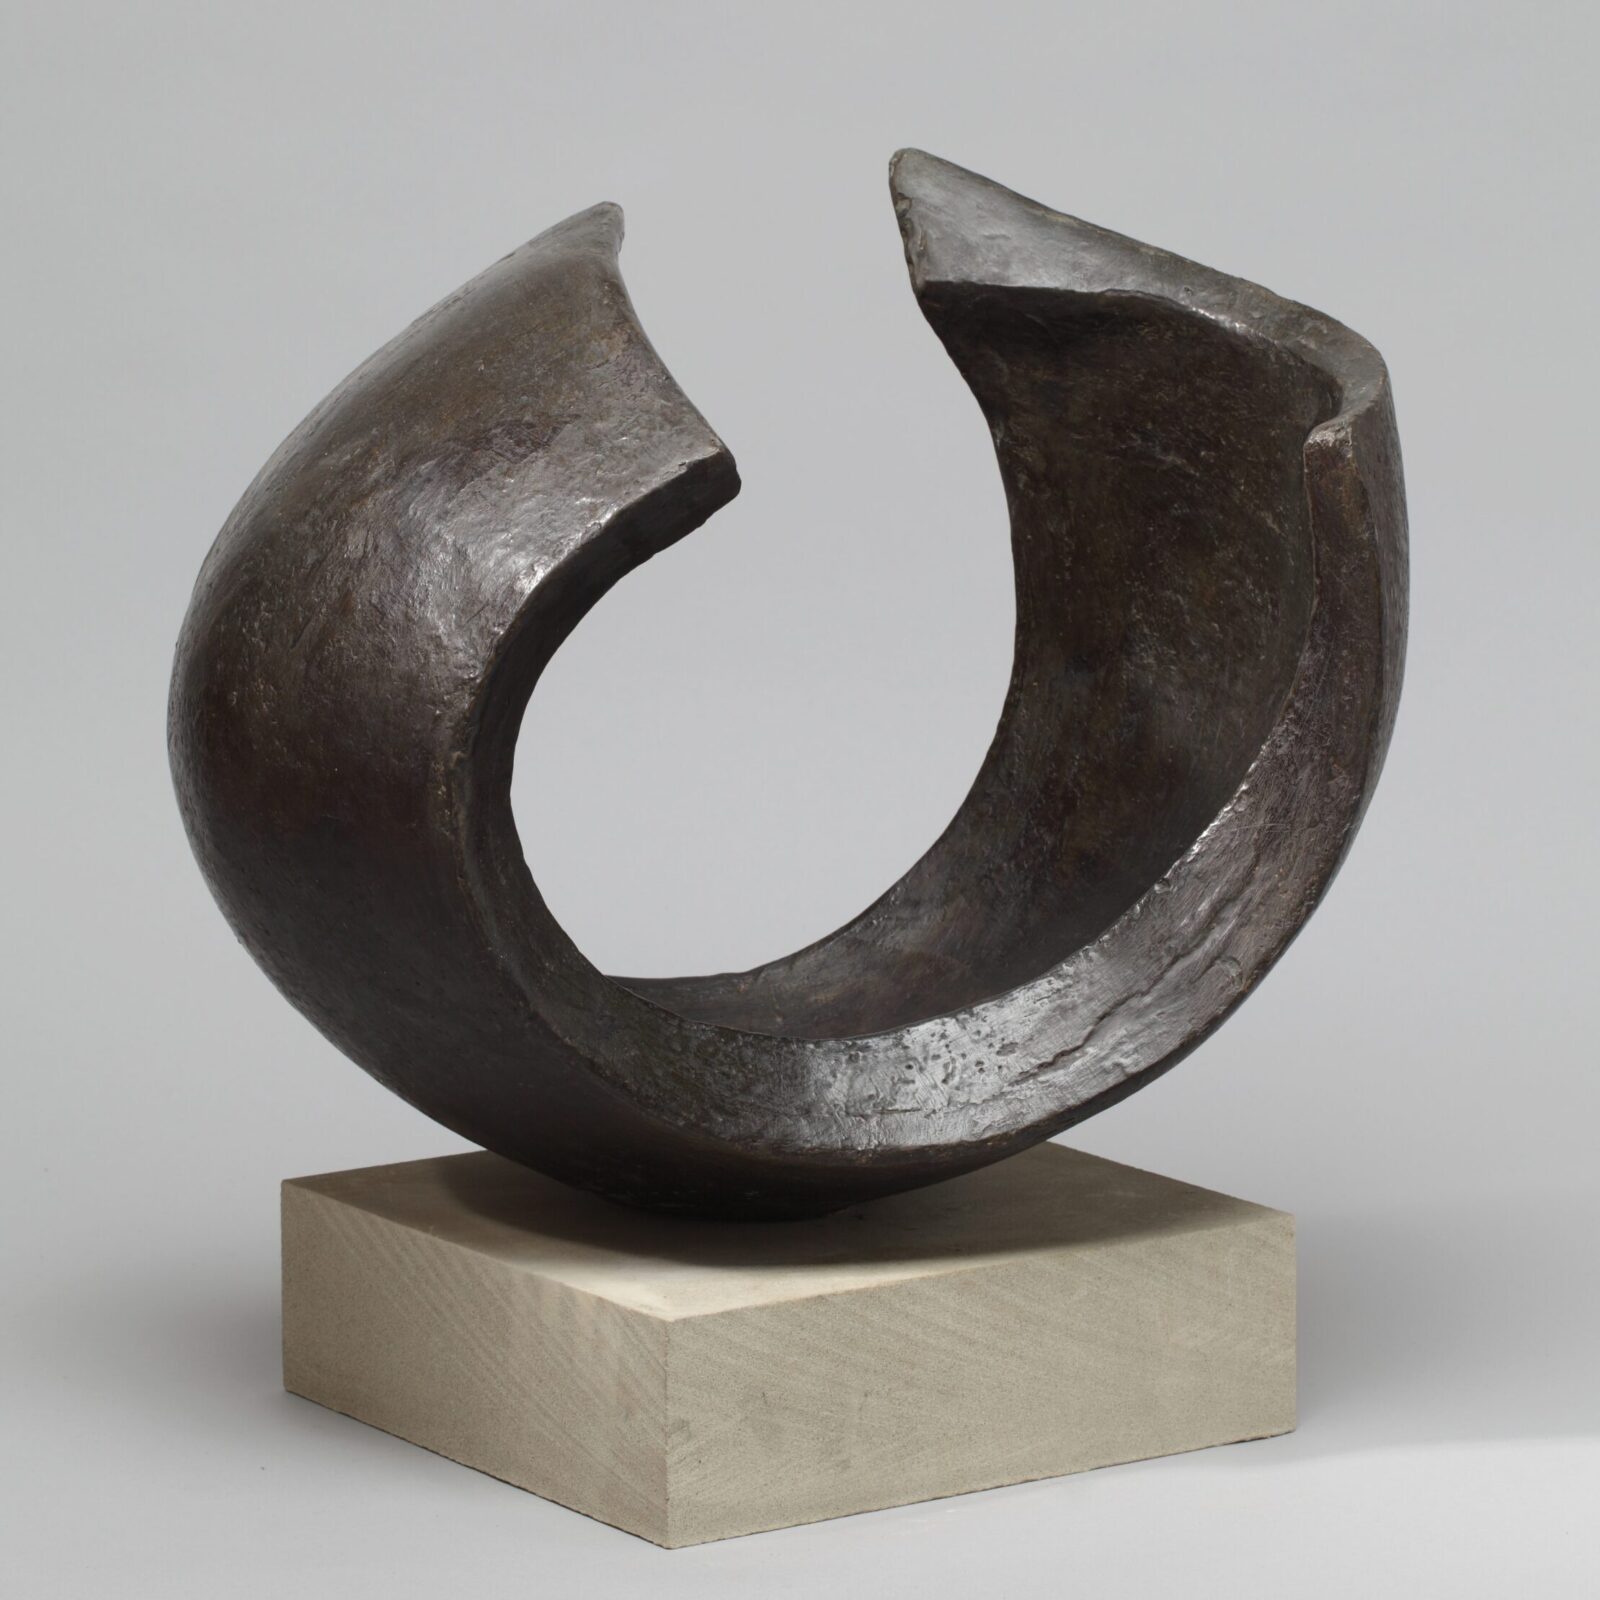 Abstract circular bronze sculpture for interior design and garden